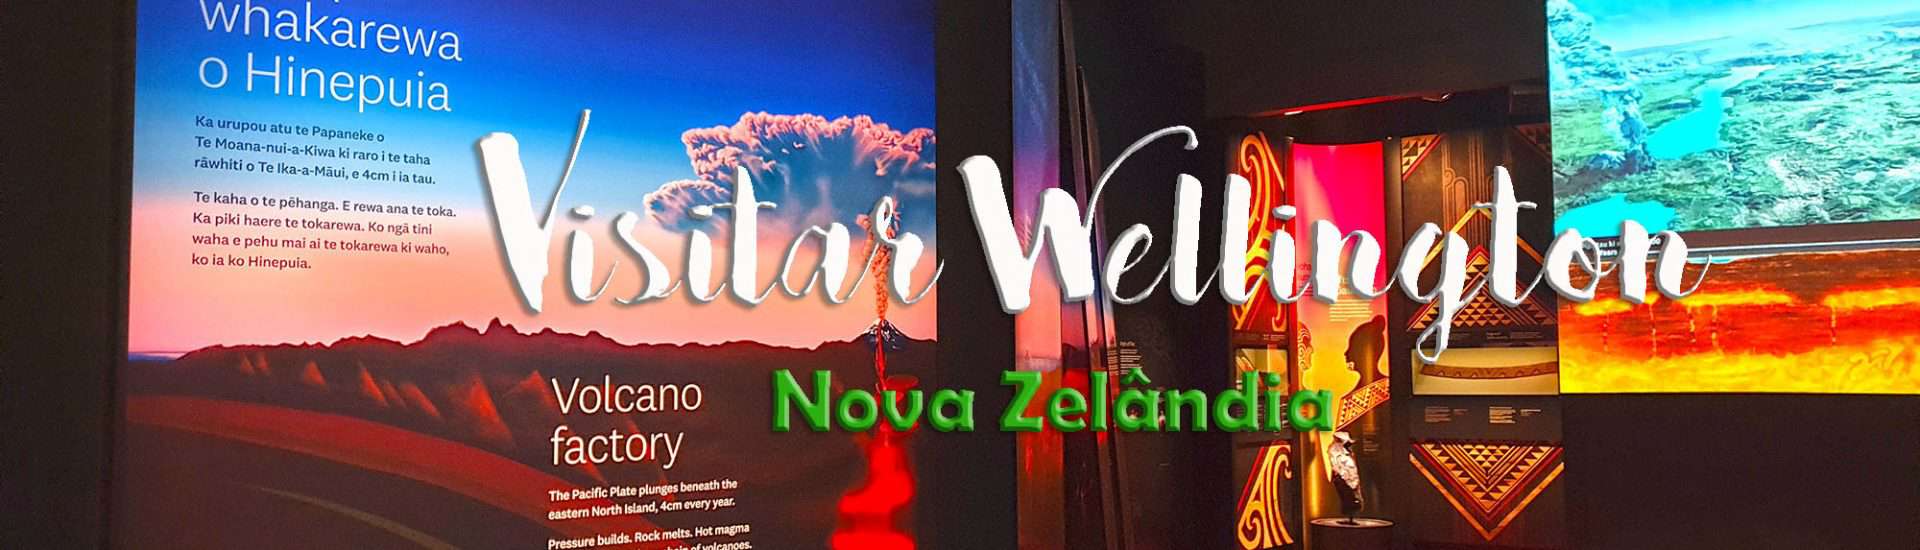 VISITAR WELLINGTON, a capital mais meridional do mundo | Nova Zelândia